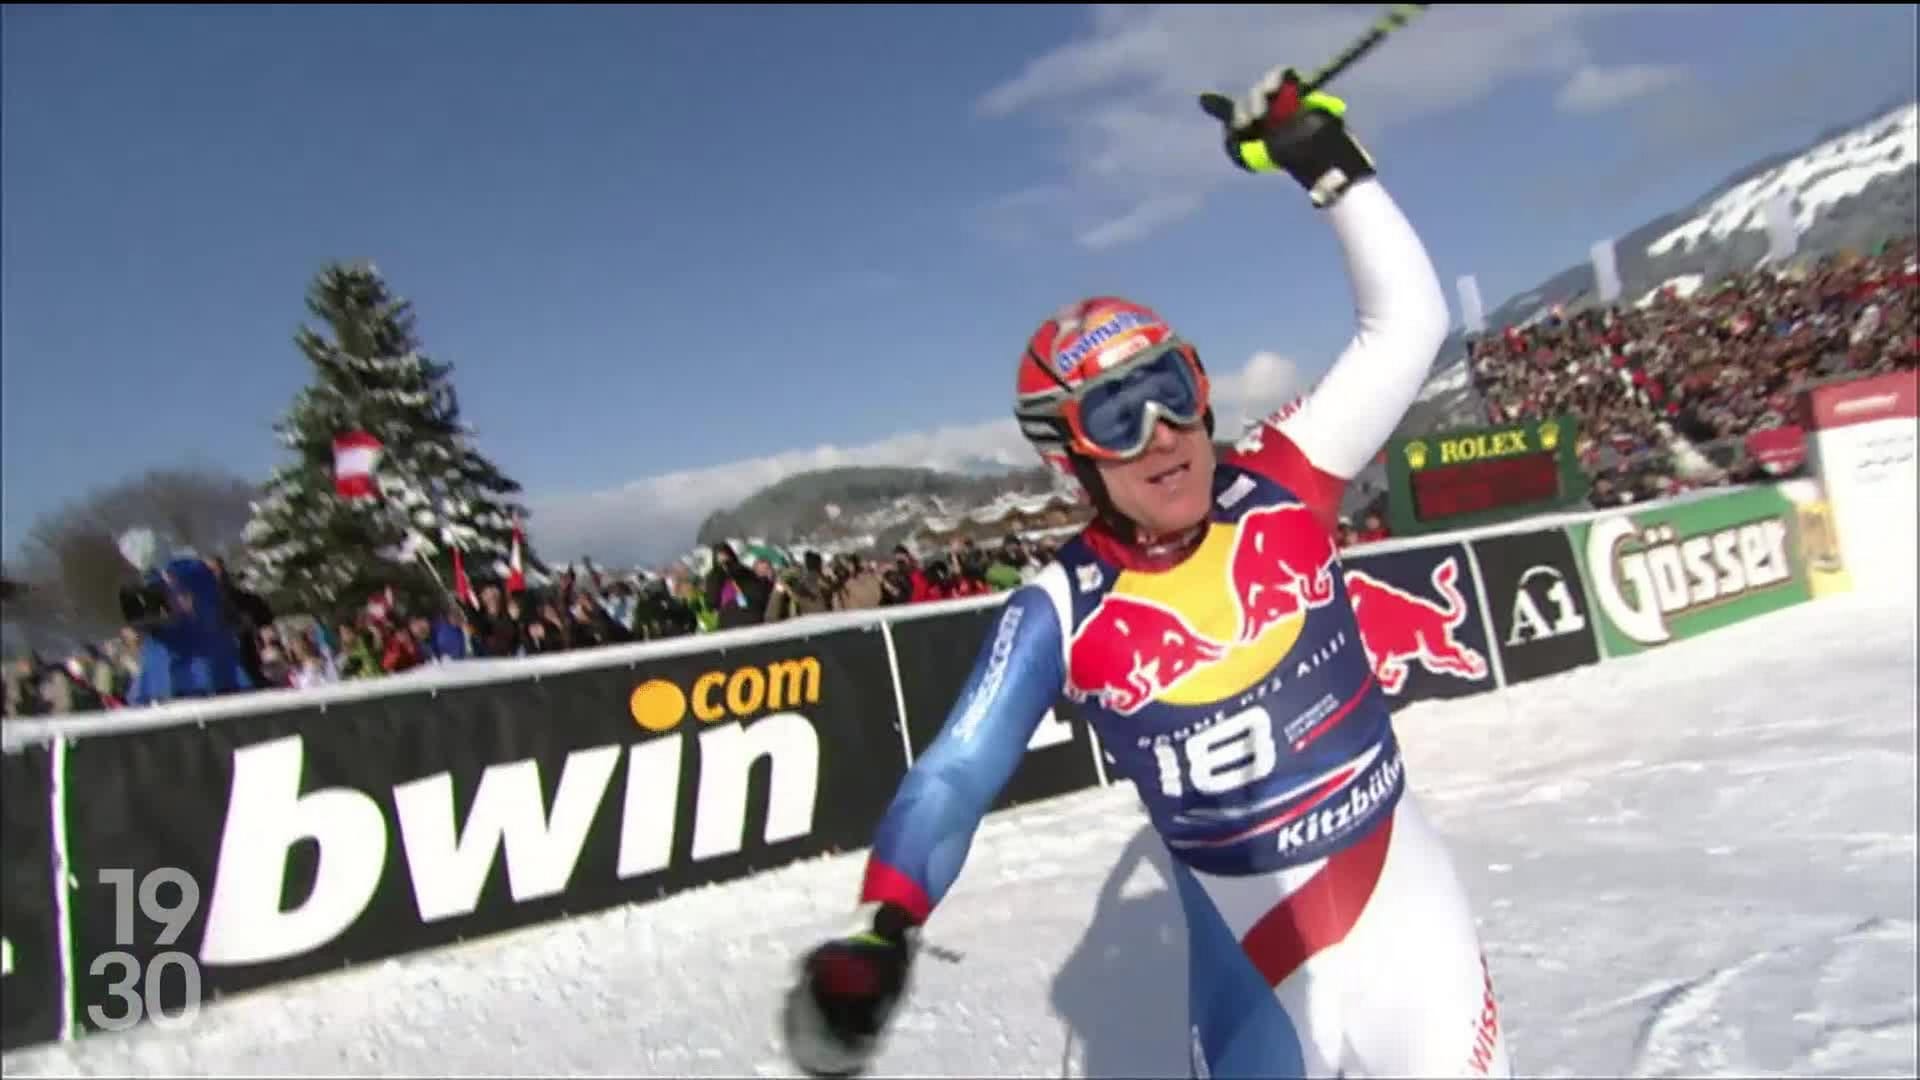 Coupe du monde - Kitzbühel comme si vous y étiez : la caméra embarquée de  la descente - Vidéo Ski alpin - Eurosport